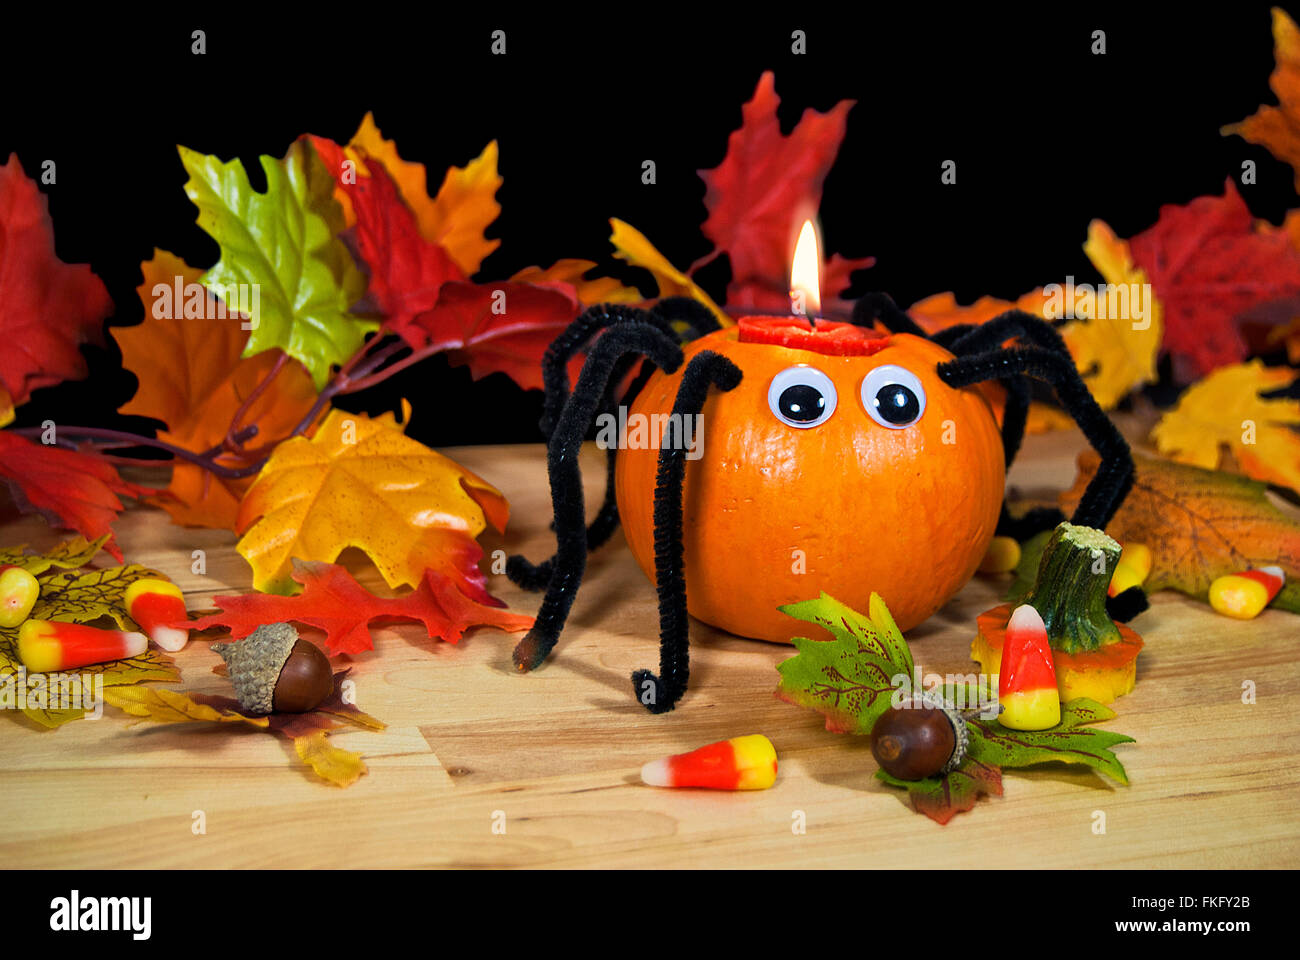 Araignée Halloween citrouille bougie avec le maïs de bonbons, les glands et les feuilles d'automne. Banque D'Images